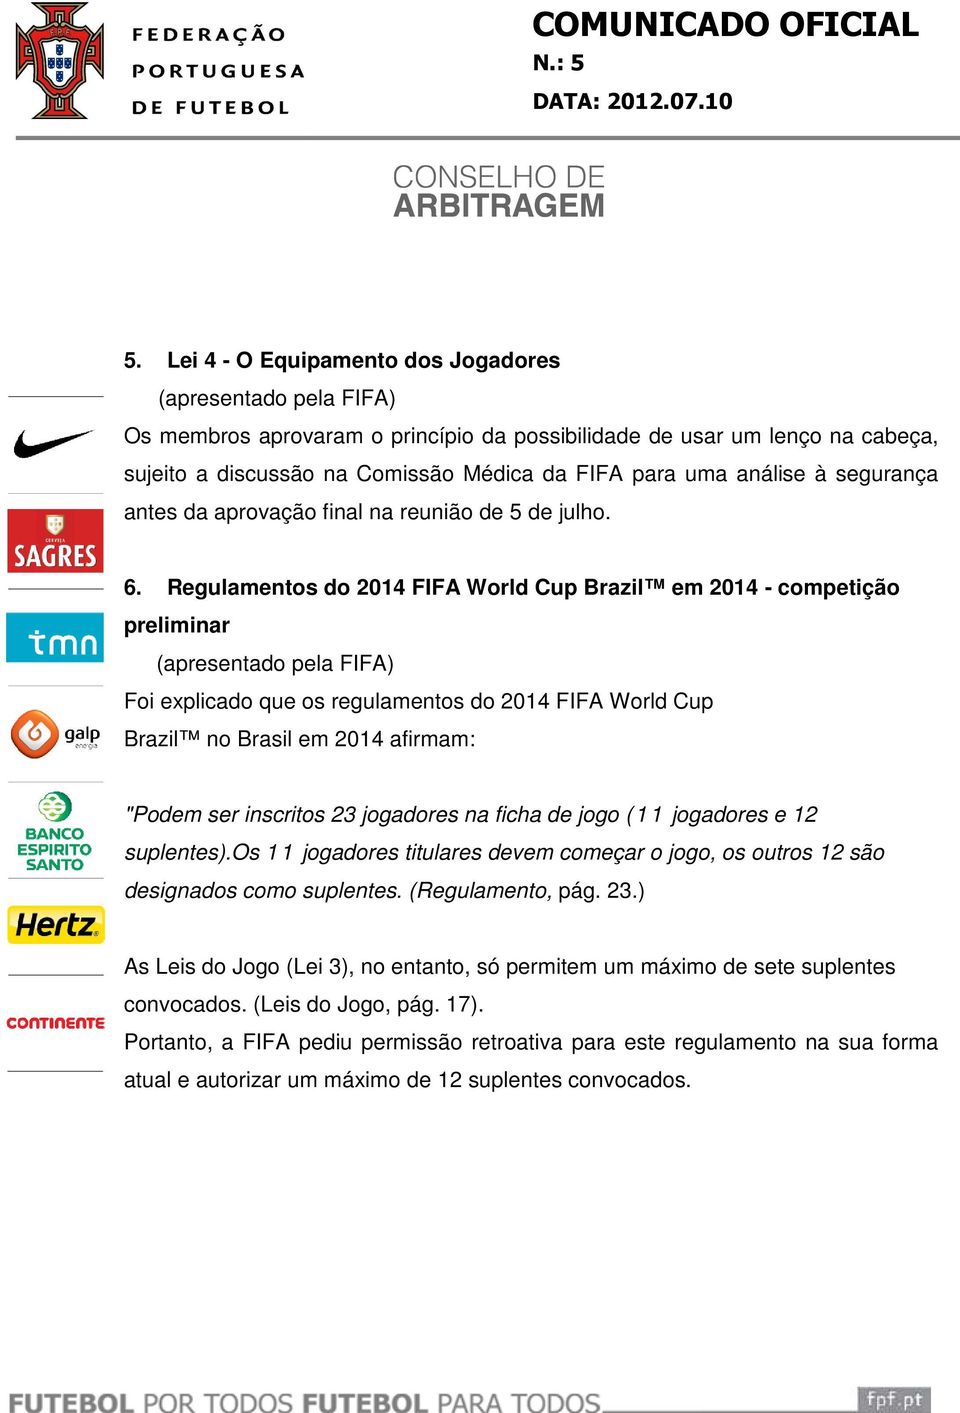 Regulamentos do 2014 FIFA FA World Cup Brazil em 2014 - competição preliminar Foi explicado que os regulamentos do 2014 FIFA World Cup Brazil no Brasil em 2014 afirmam: "Podem ser inscritos 23